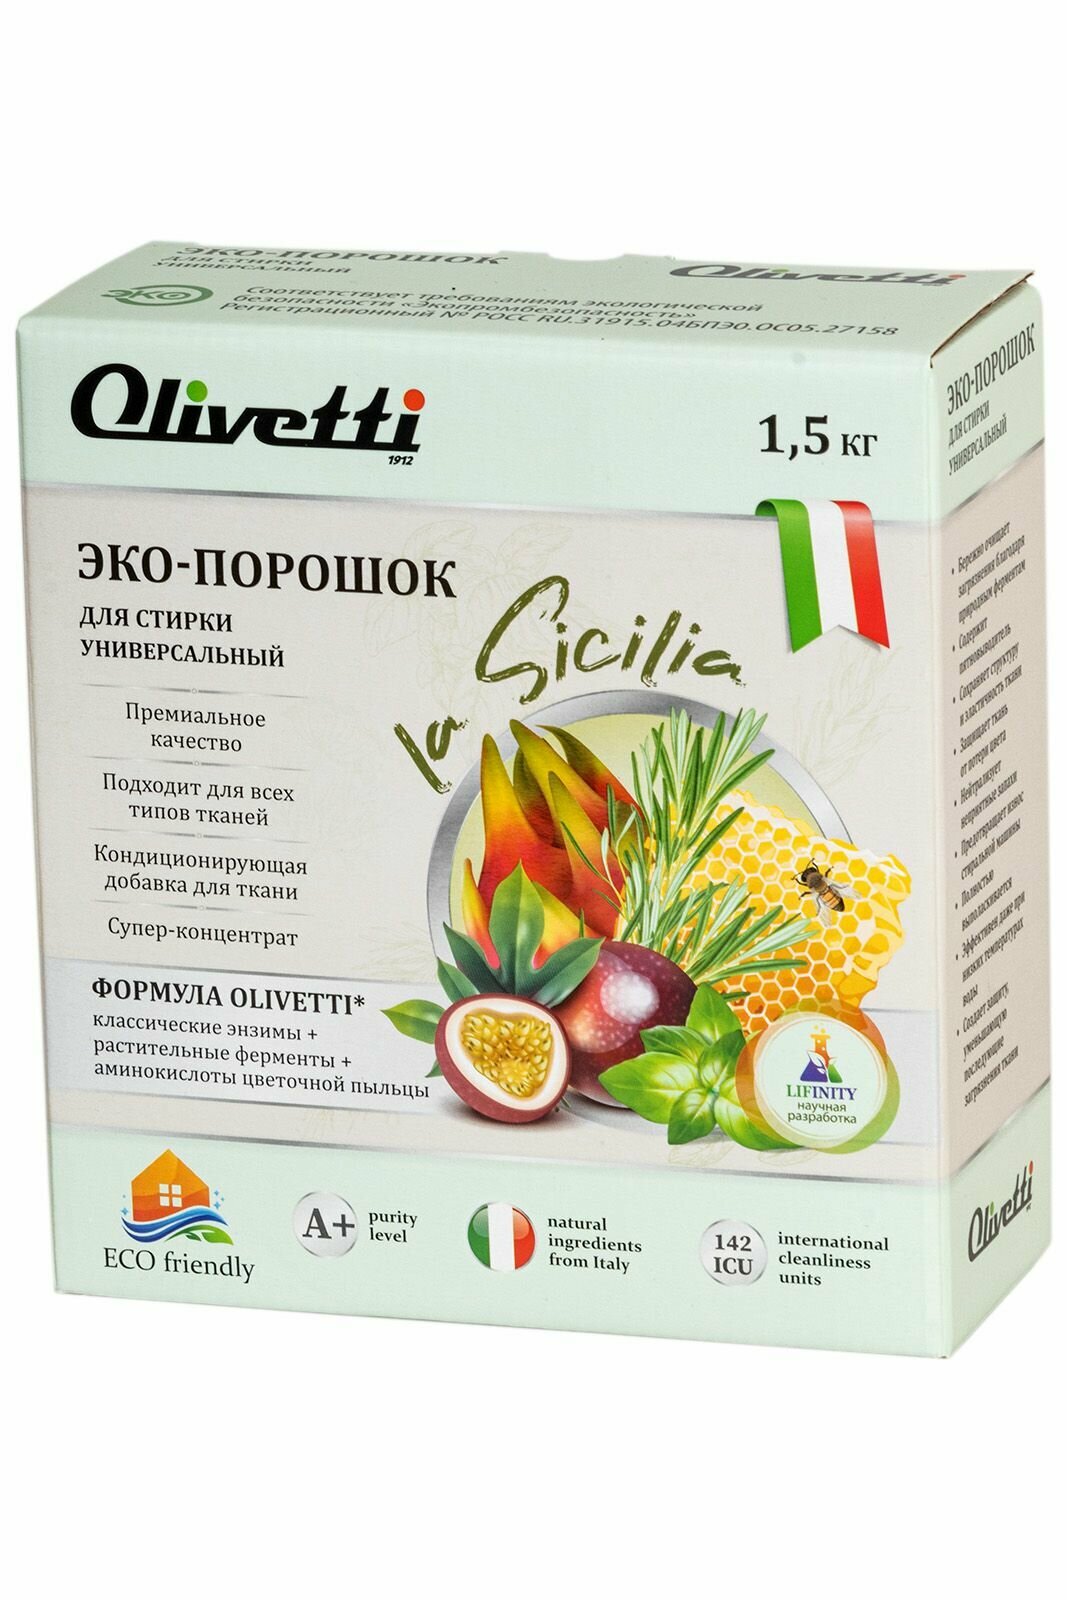 Эко порошок концентрат Olivetti La Sicilia универсальный15 кг премиум качество натуральные компоненты для всех типов тканей